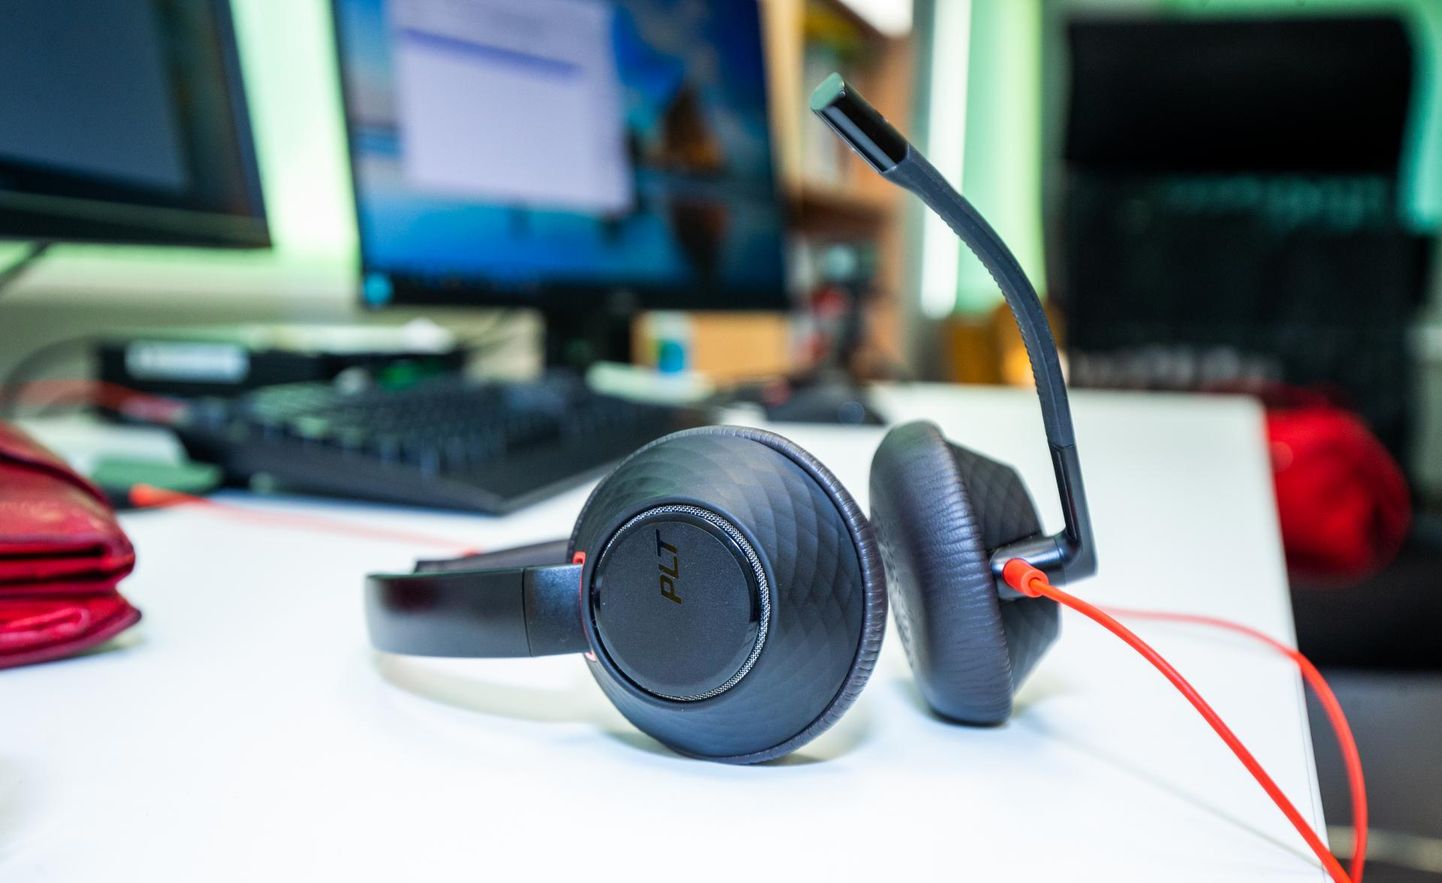 Pidev kõrvaklappidest valju muusika kuulamine võib põhjustada varast kuulmislangust.